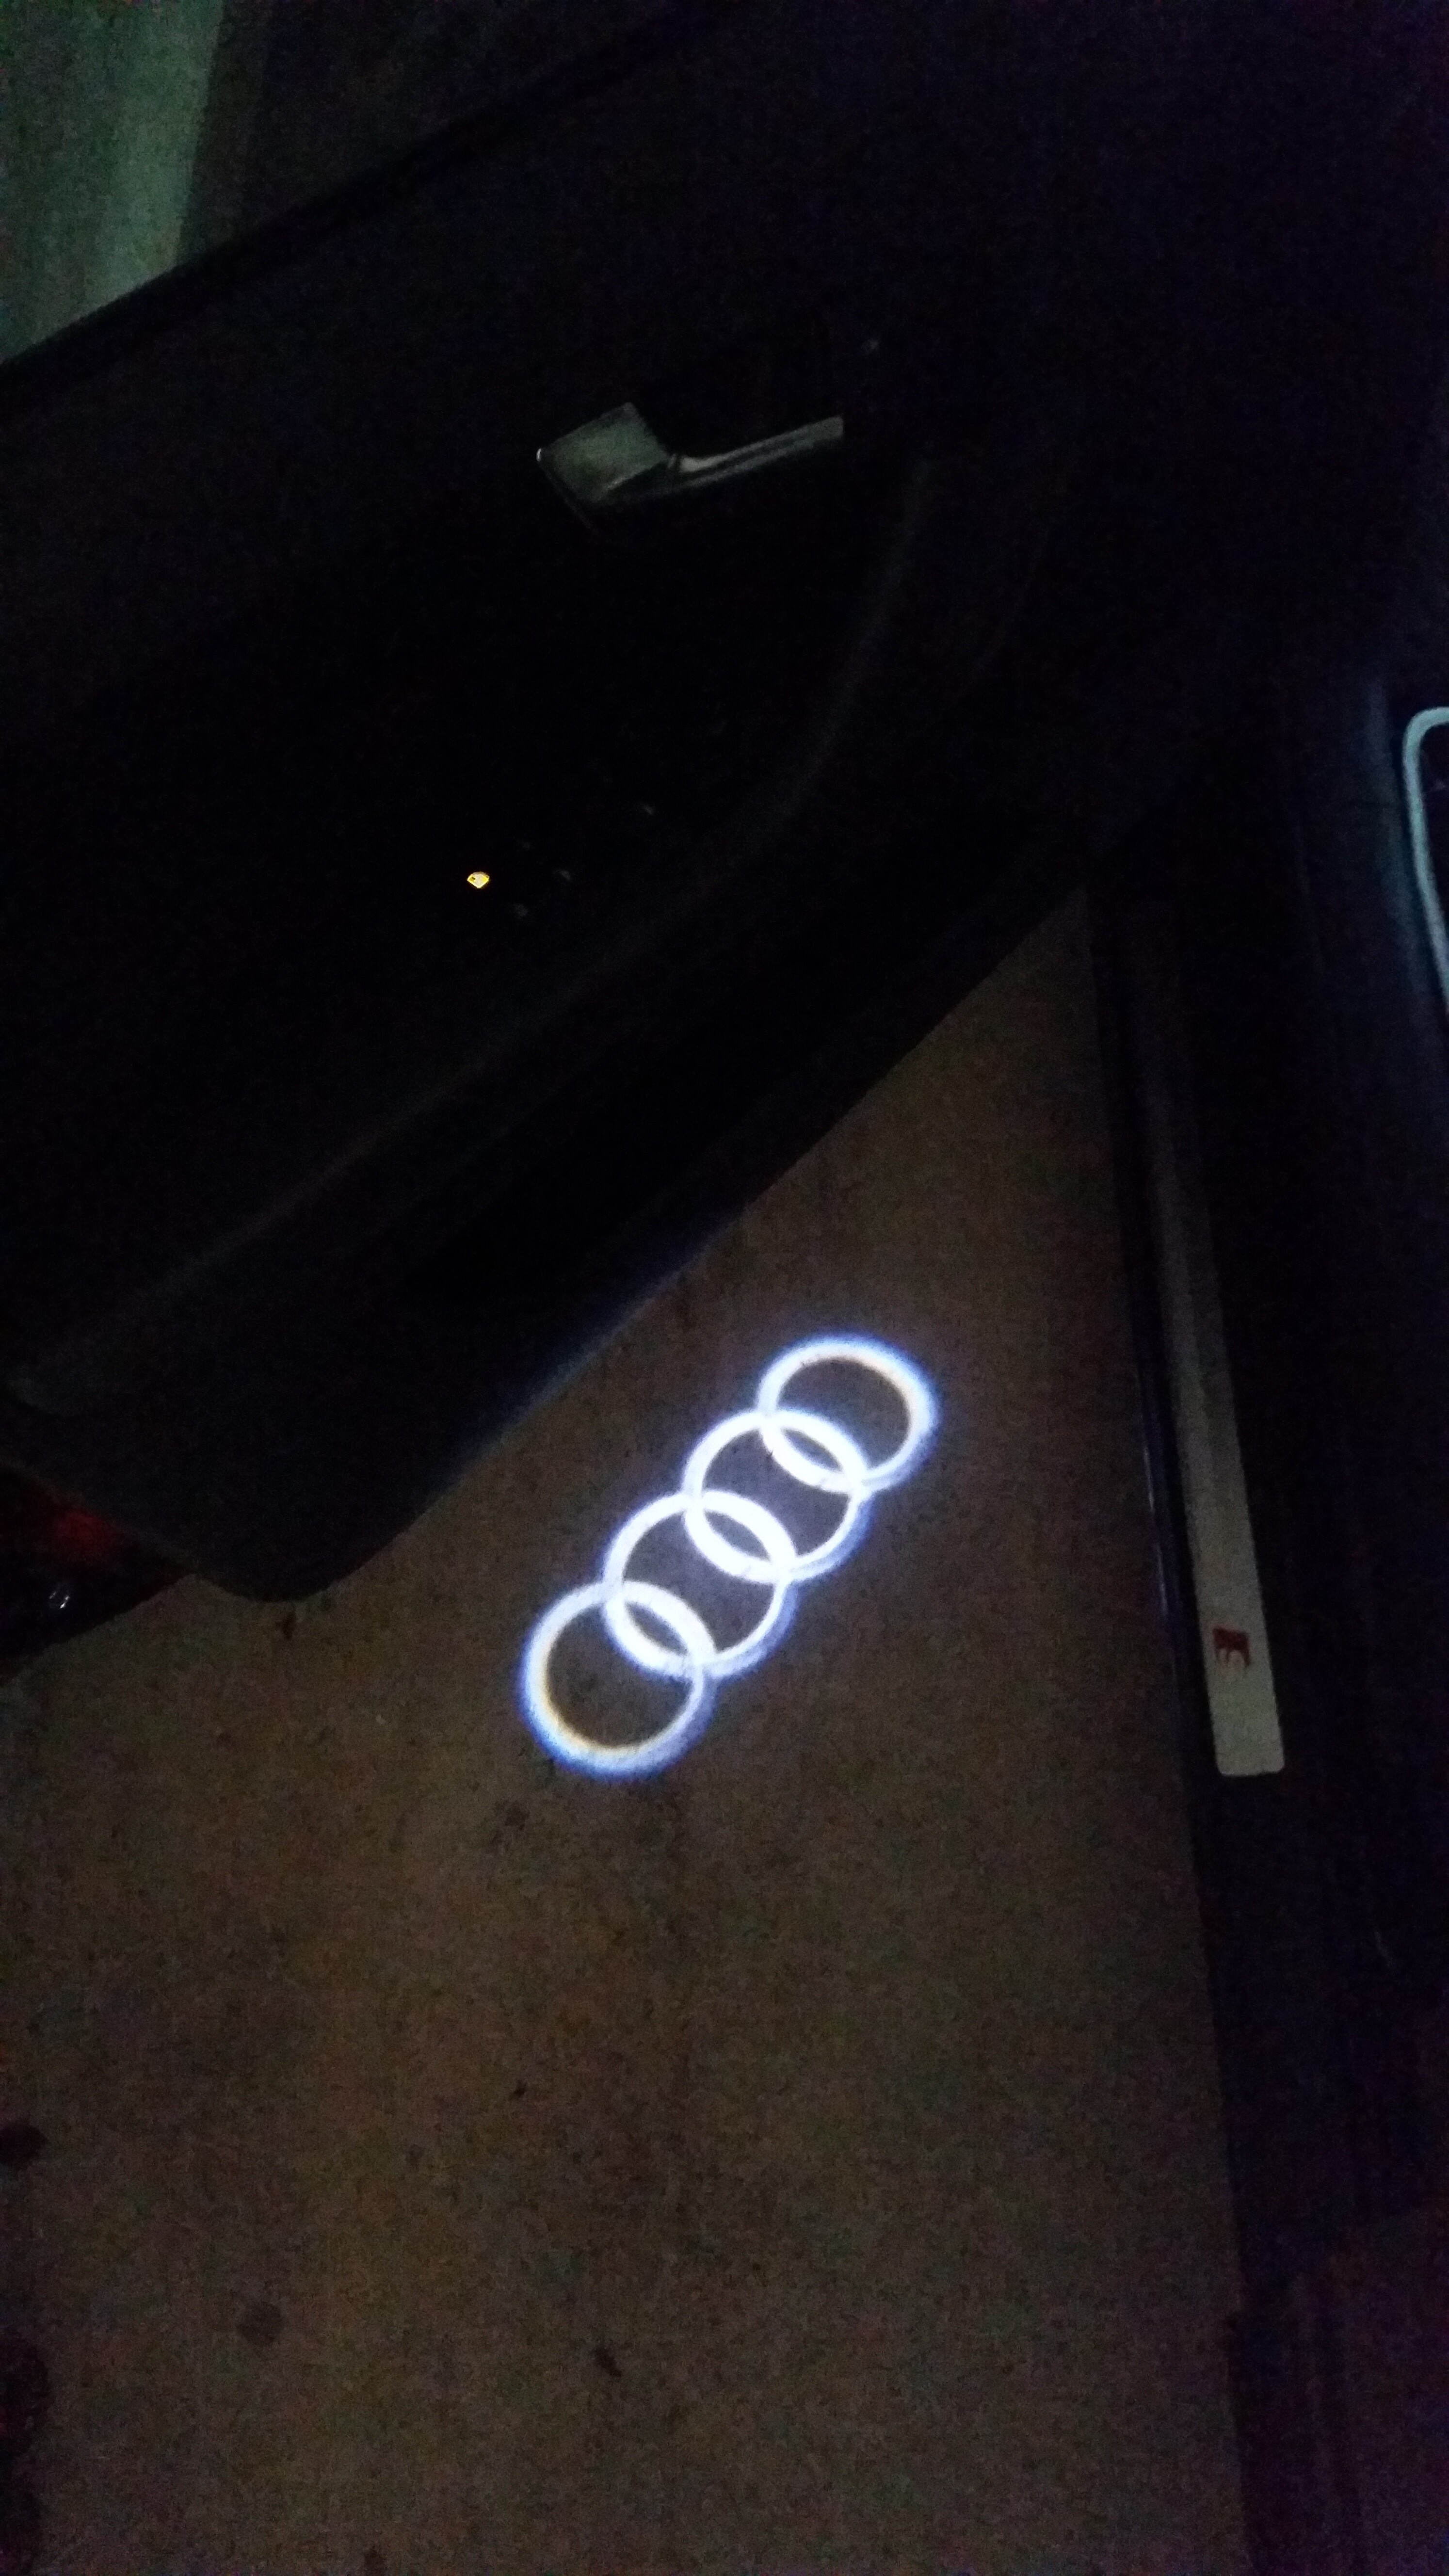 8P] S-Line Einstiegsbeleuchtung Audi Logo - Allgemeine Fragen (8P) -  A3-Freunde